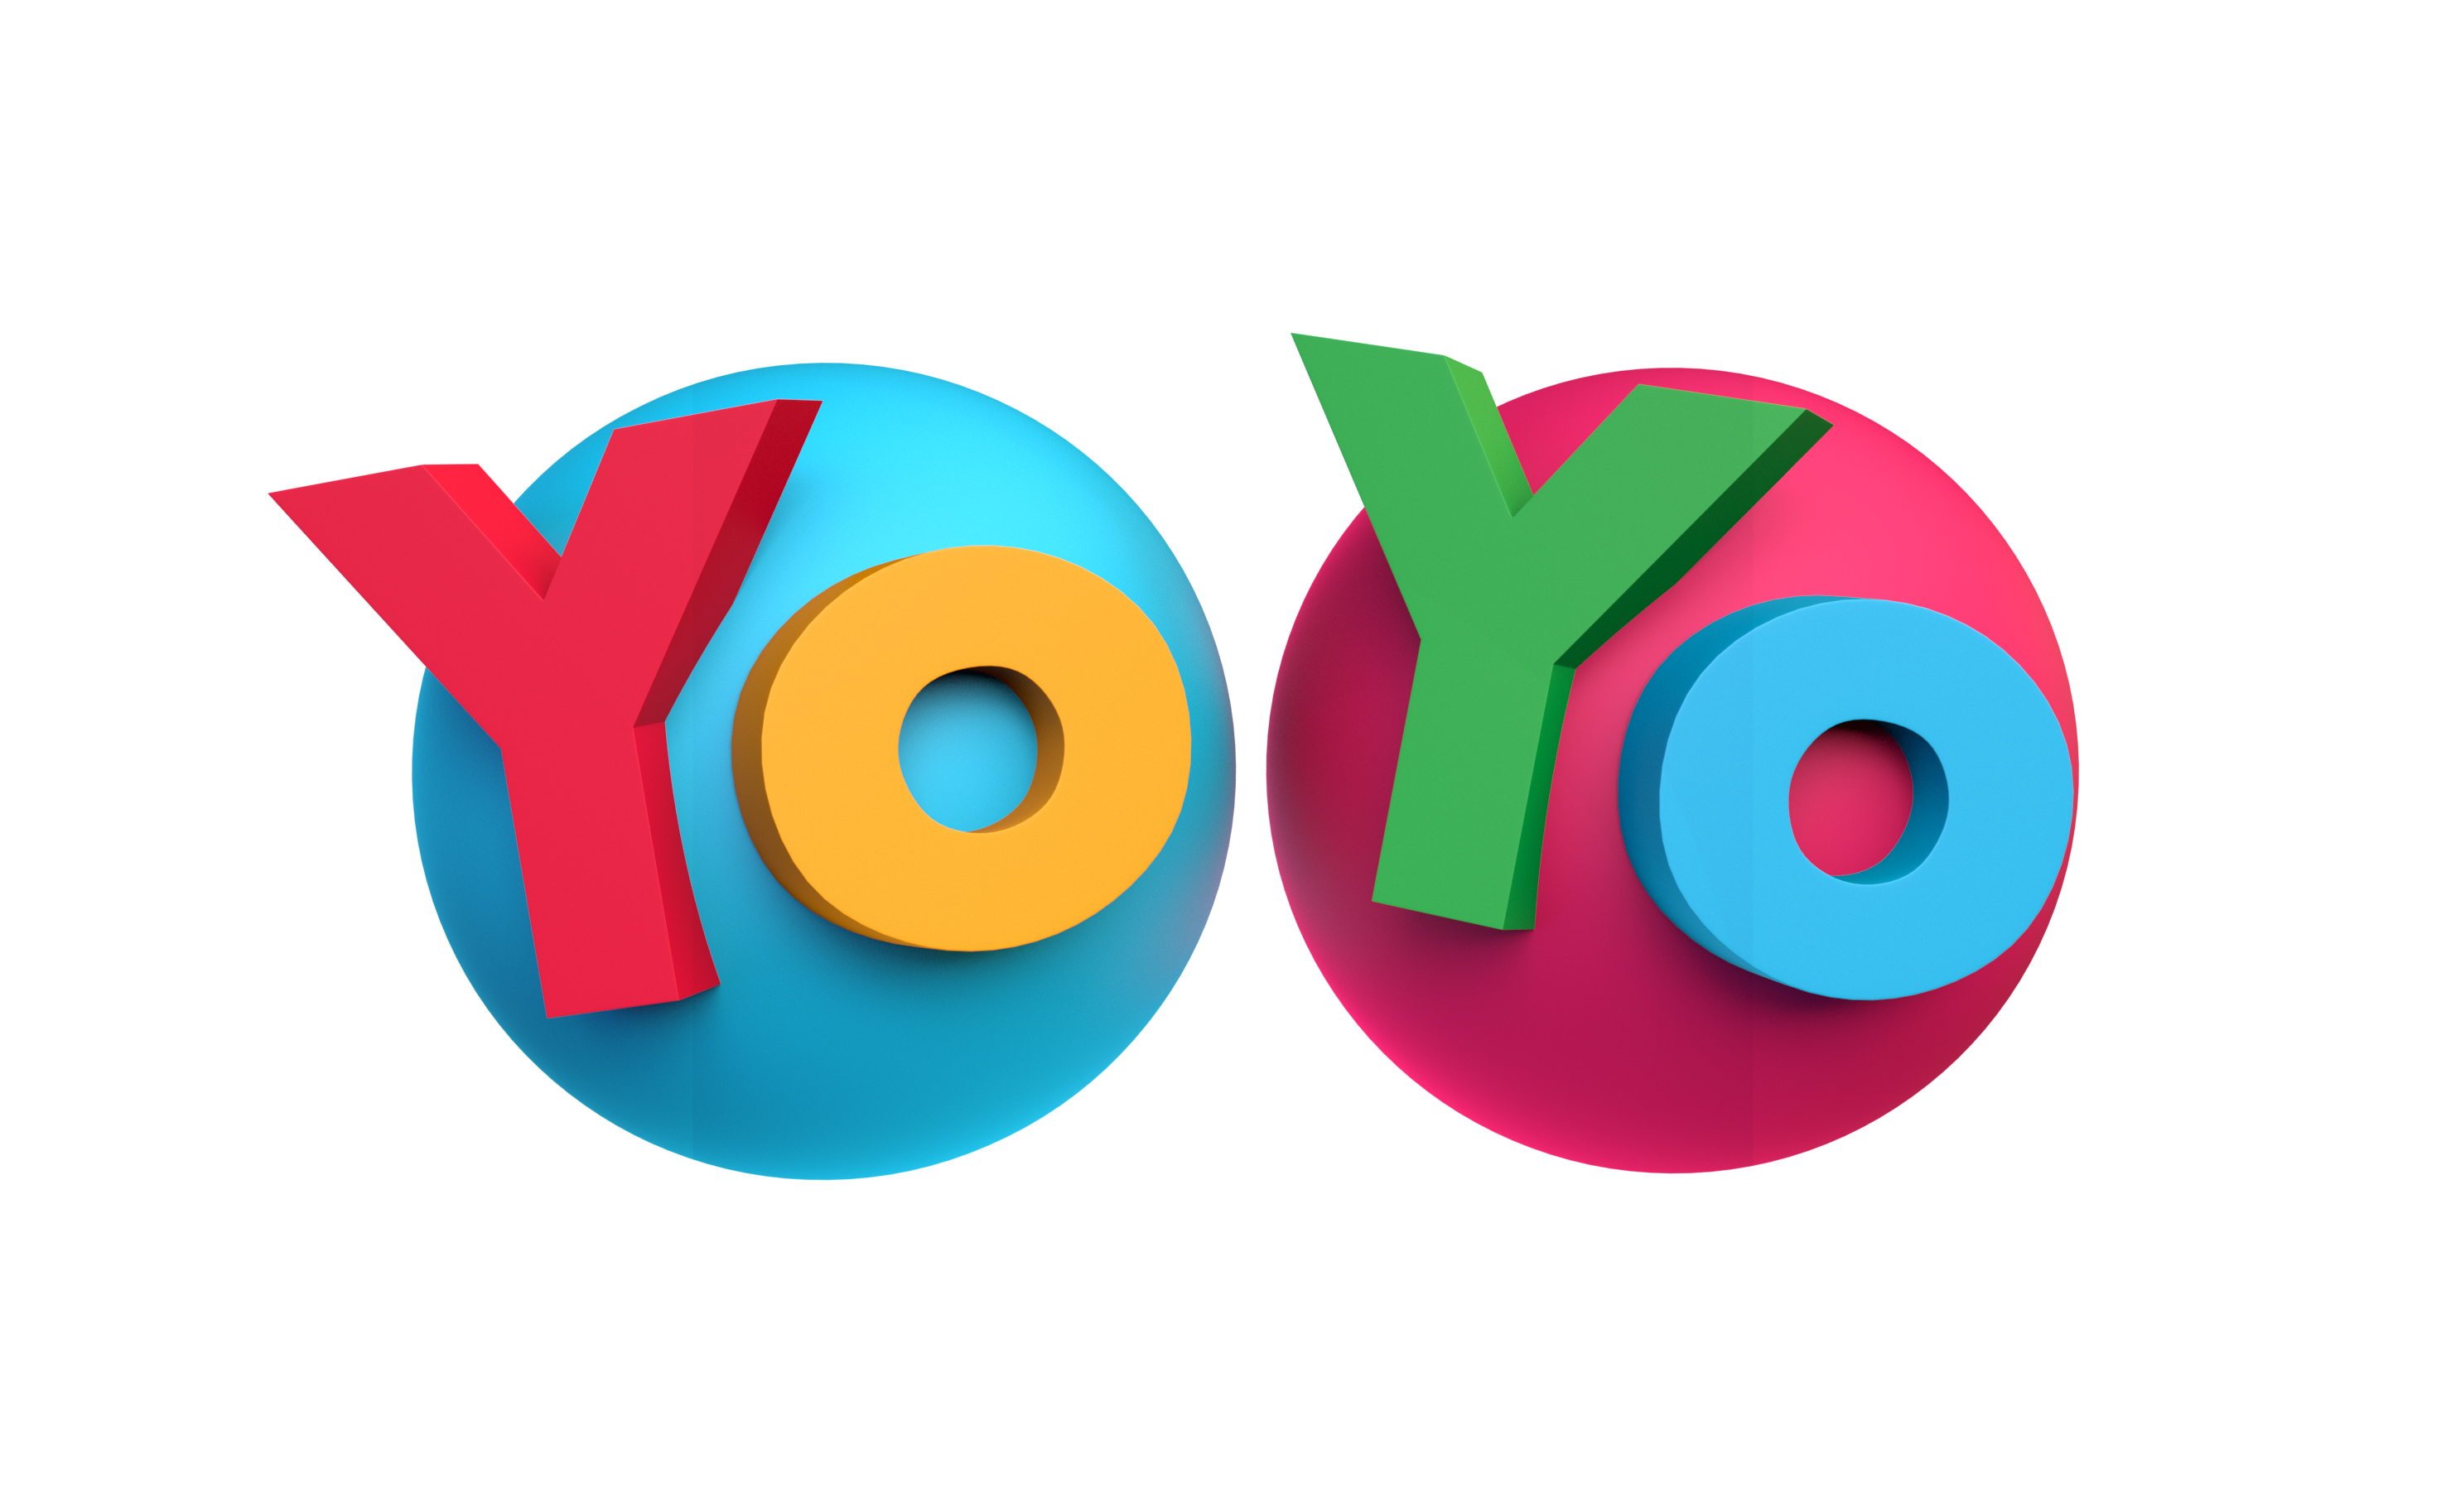 YoYo - English, Spanish